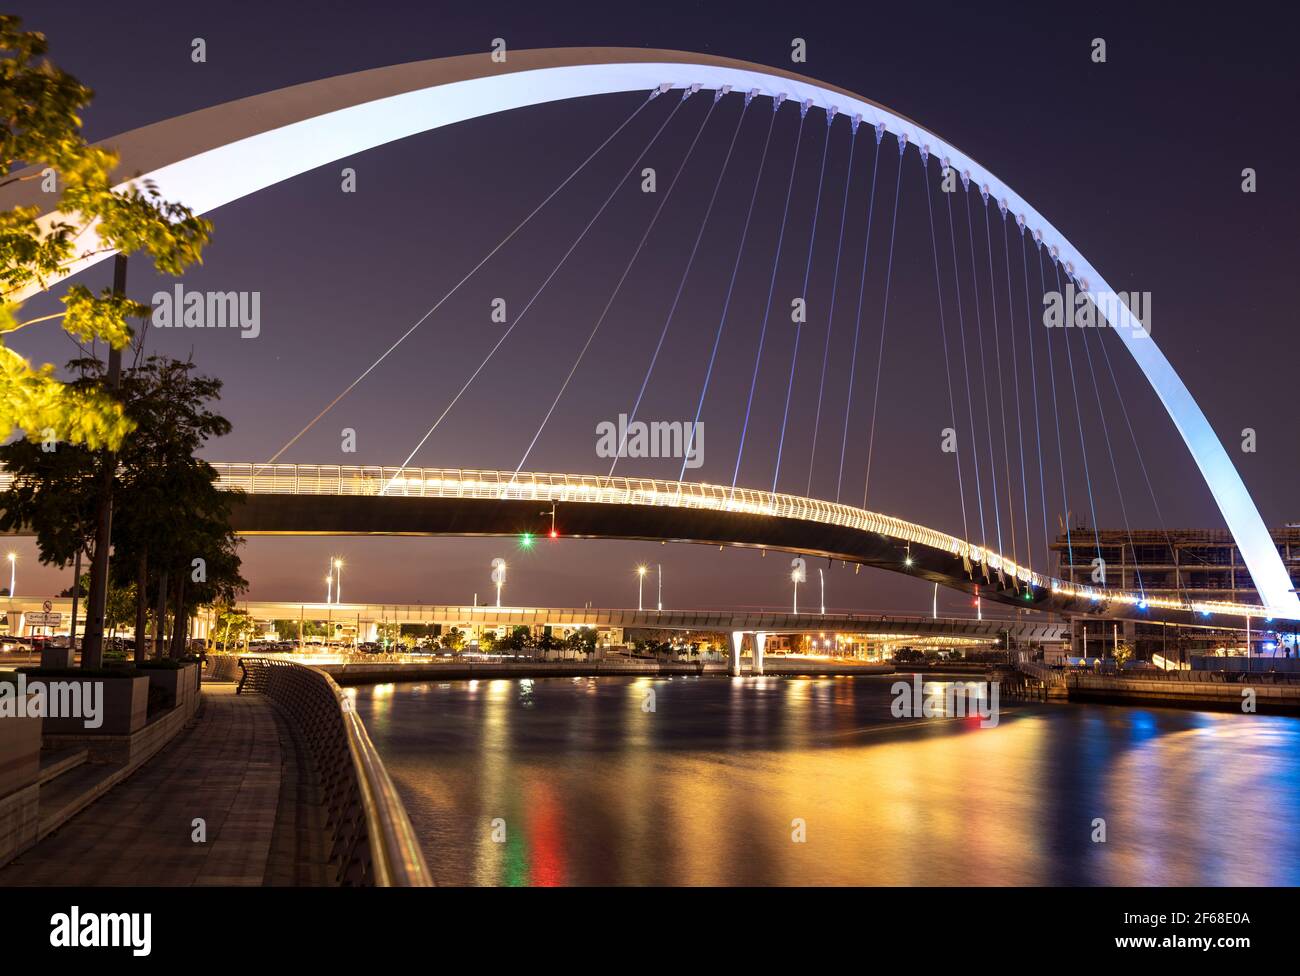 Wunderschöne Aussicht auf die beleuchtete Toleranzbrücke, die nachts von der Dubai Canal Boardwalk, Dubai, VAE, eingefangen wurde. Stockfoto